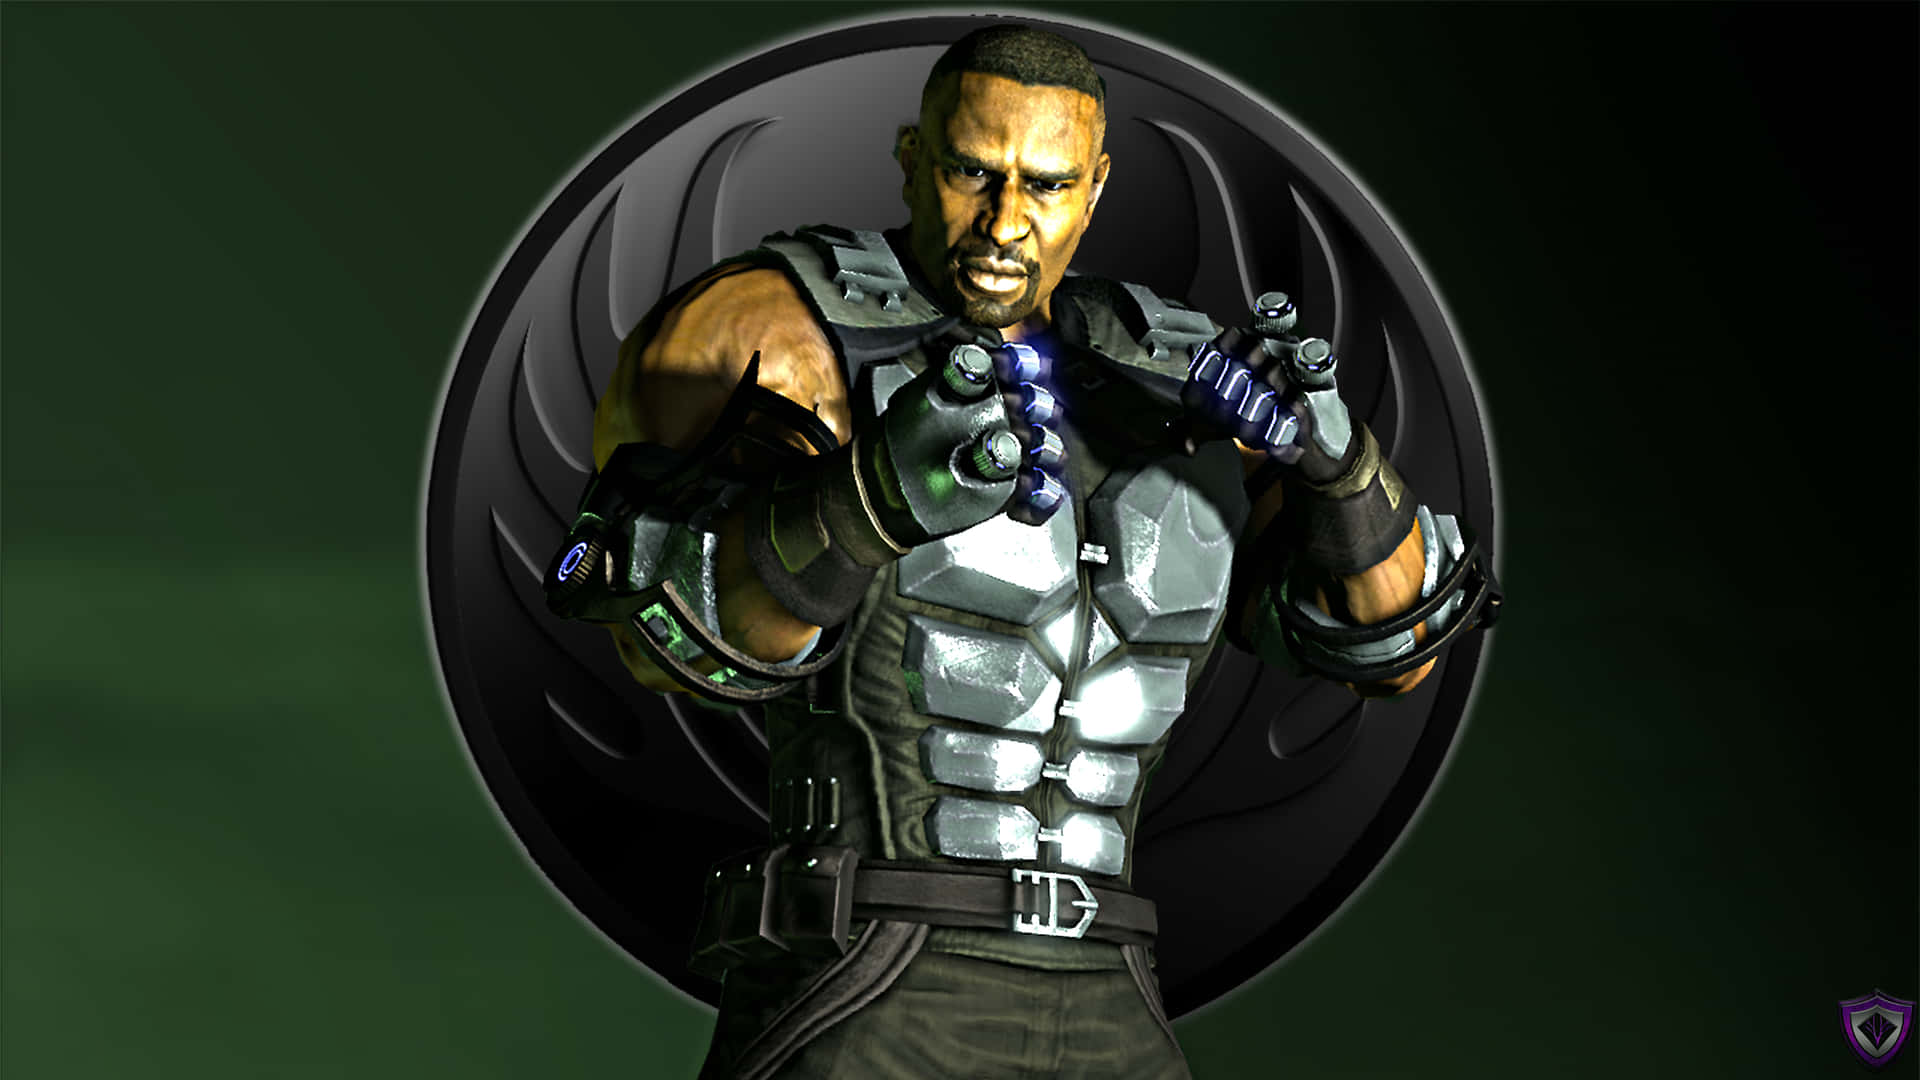 Jax, the Powerful Bionic Fighter from Mortal Kombat Wallpaper